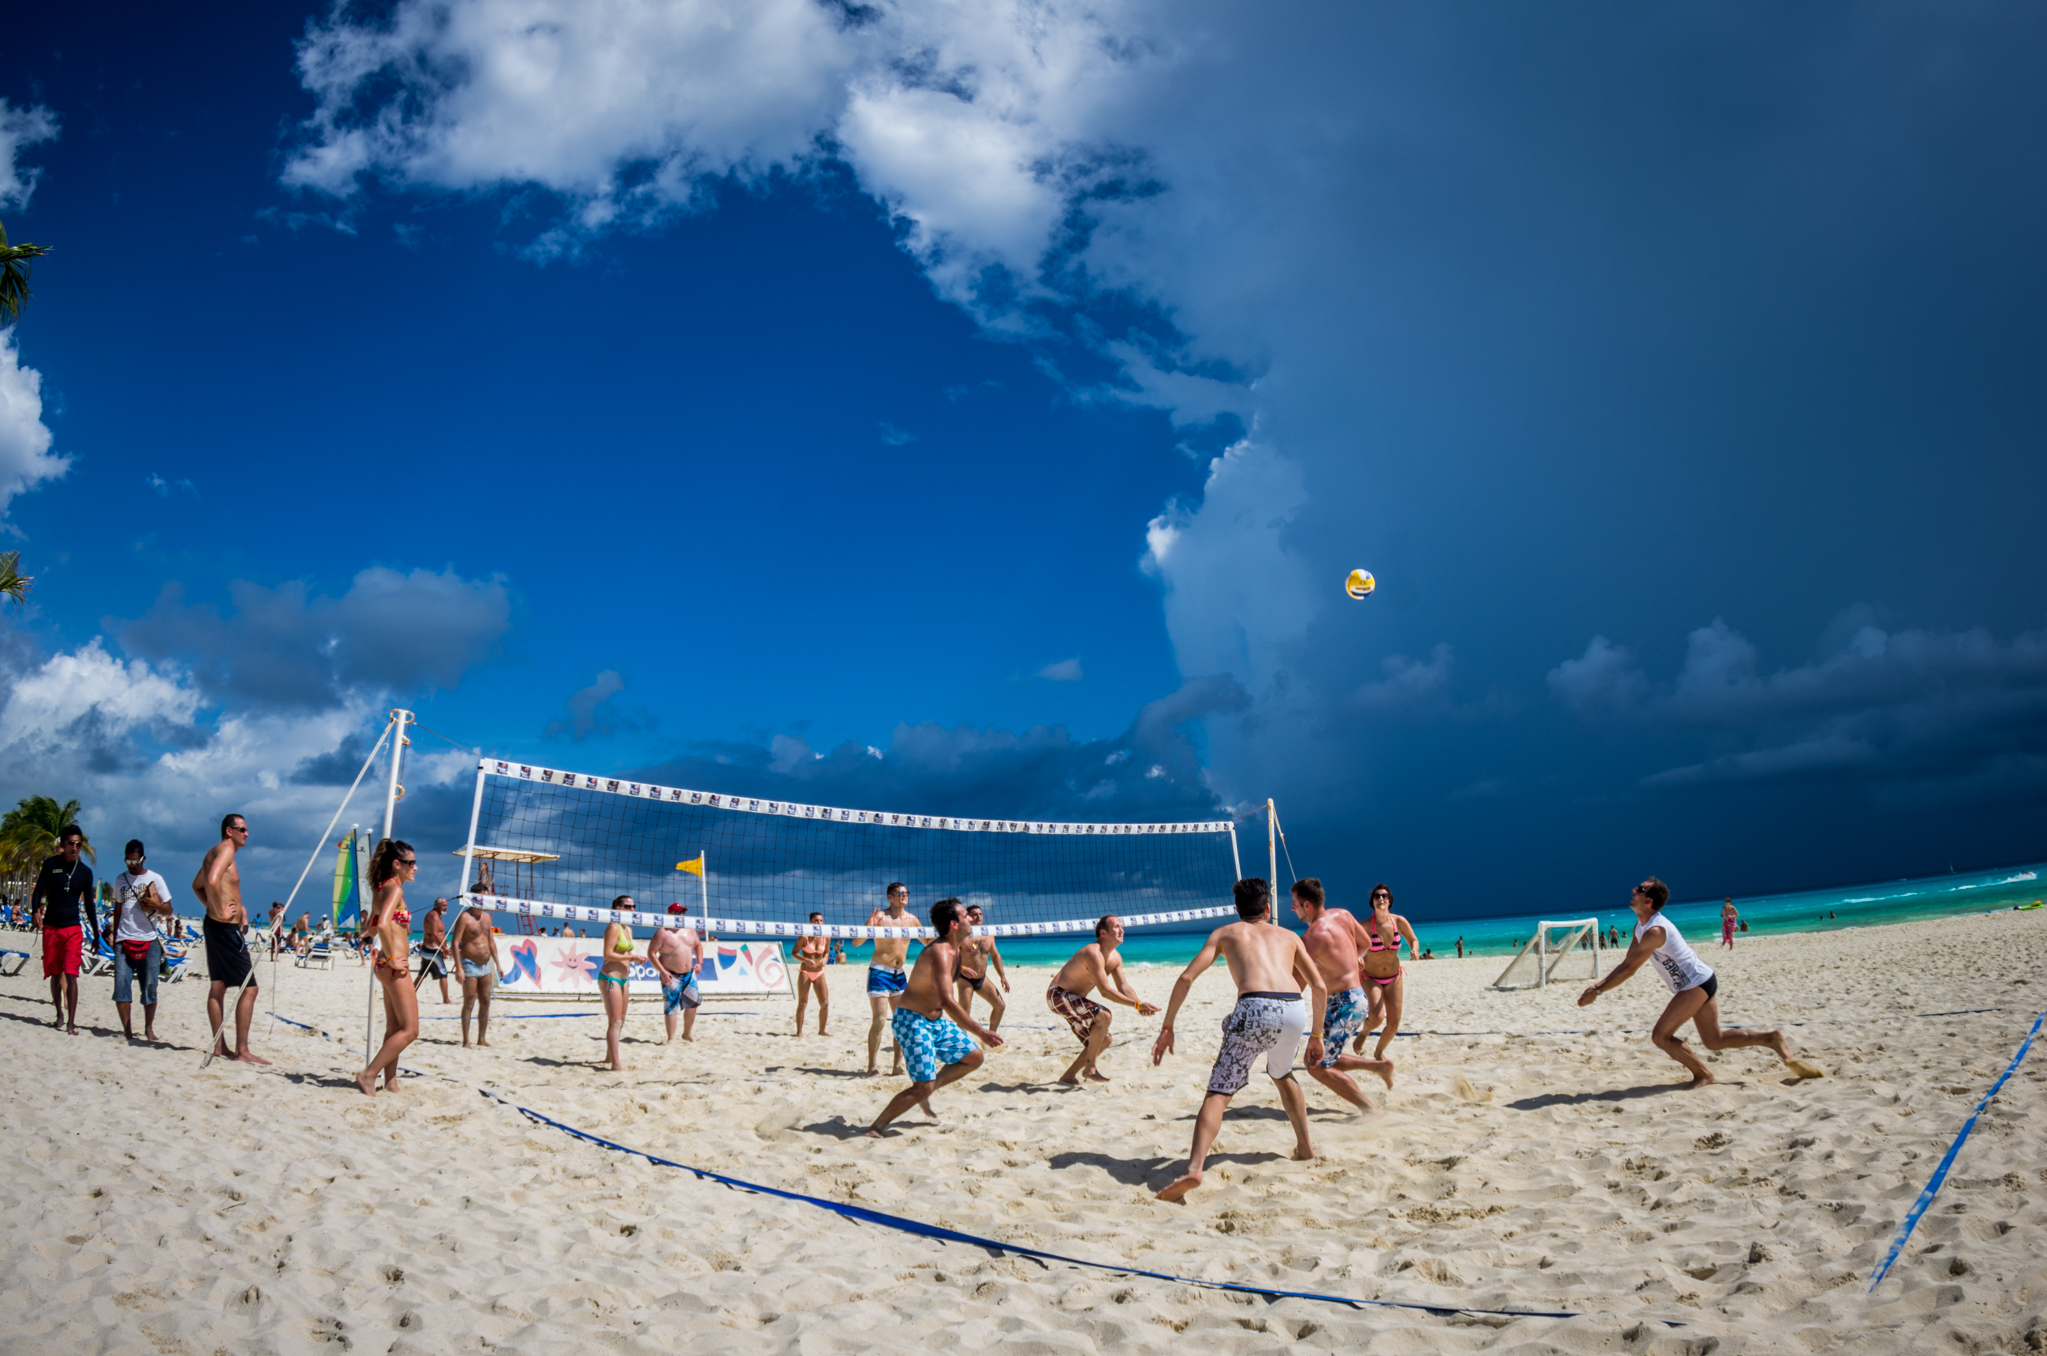 Бритая пляж. Волейбол на пляже. Волейбол на берегу моря. Волейбольная площадка на пляже. Пляжный волейбол.